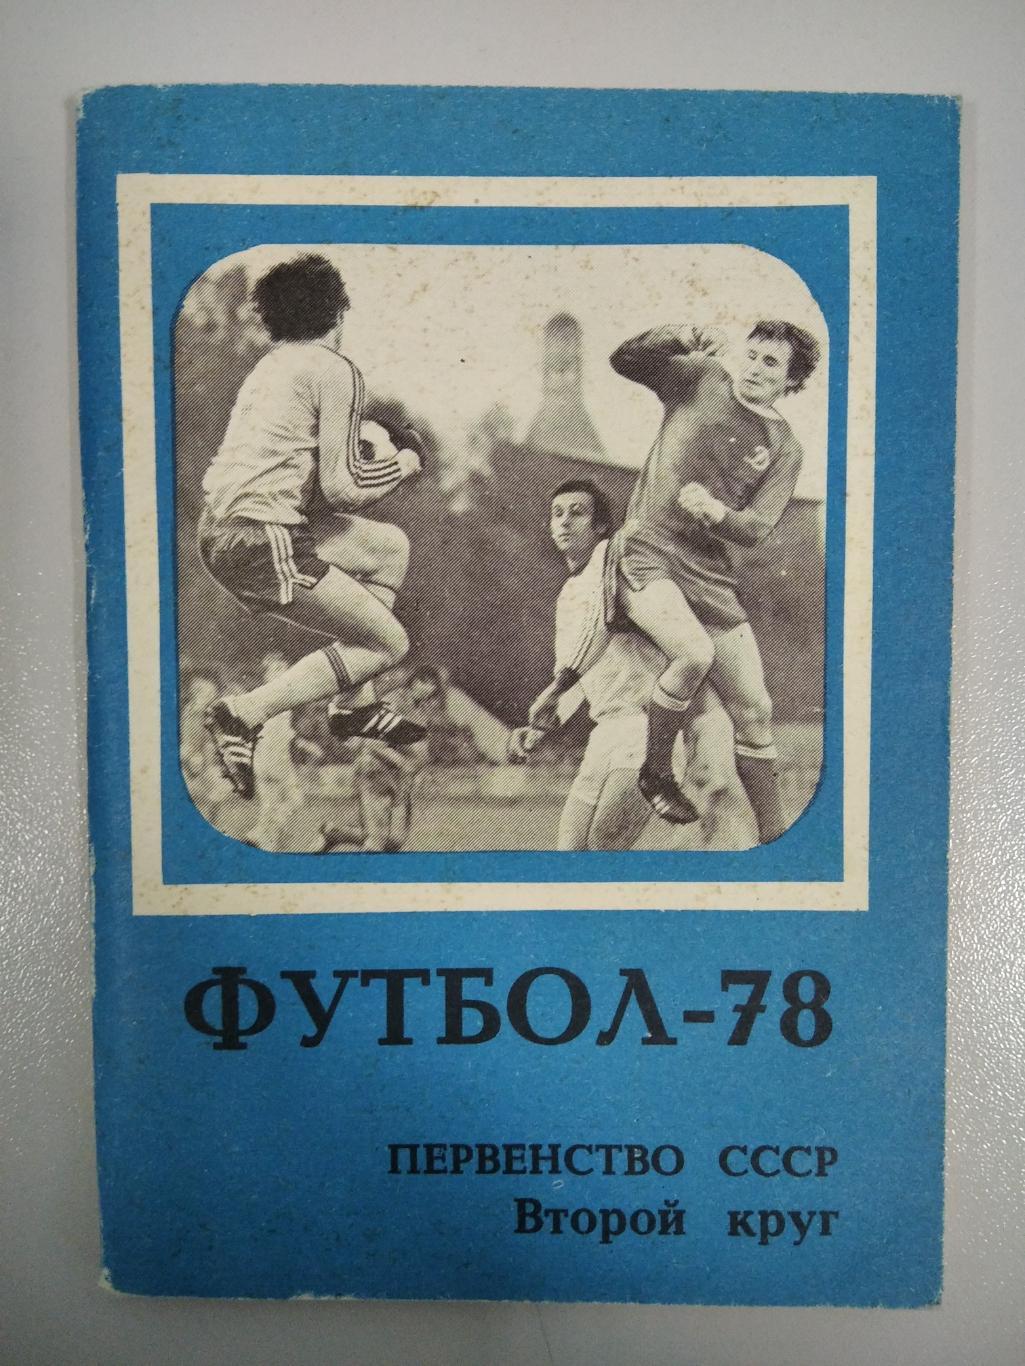 календарь - справочник Московская Правда 1978 год второй круг.